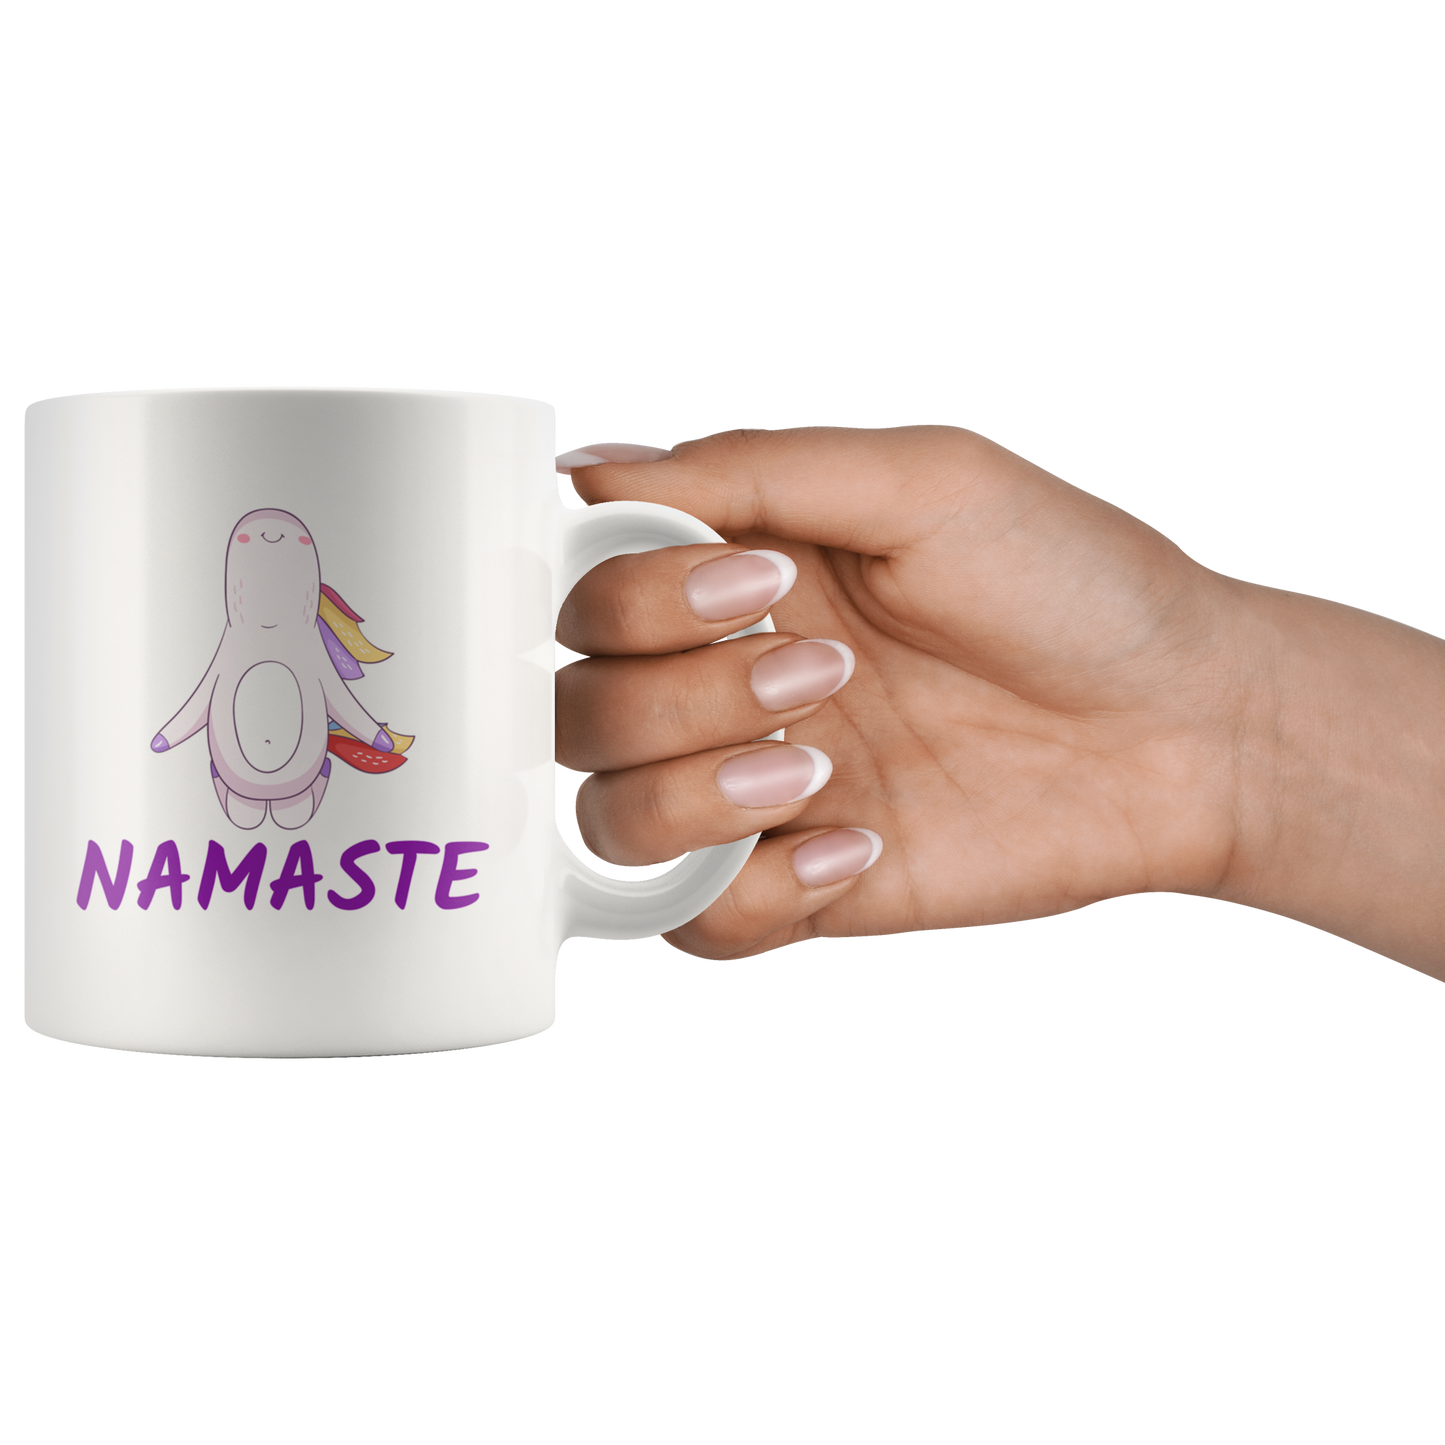 Yoga Mug Namaste Unicorn Funny Coffee Mug Gift Ceramic